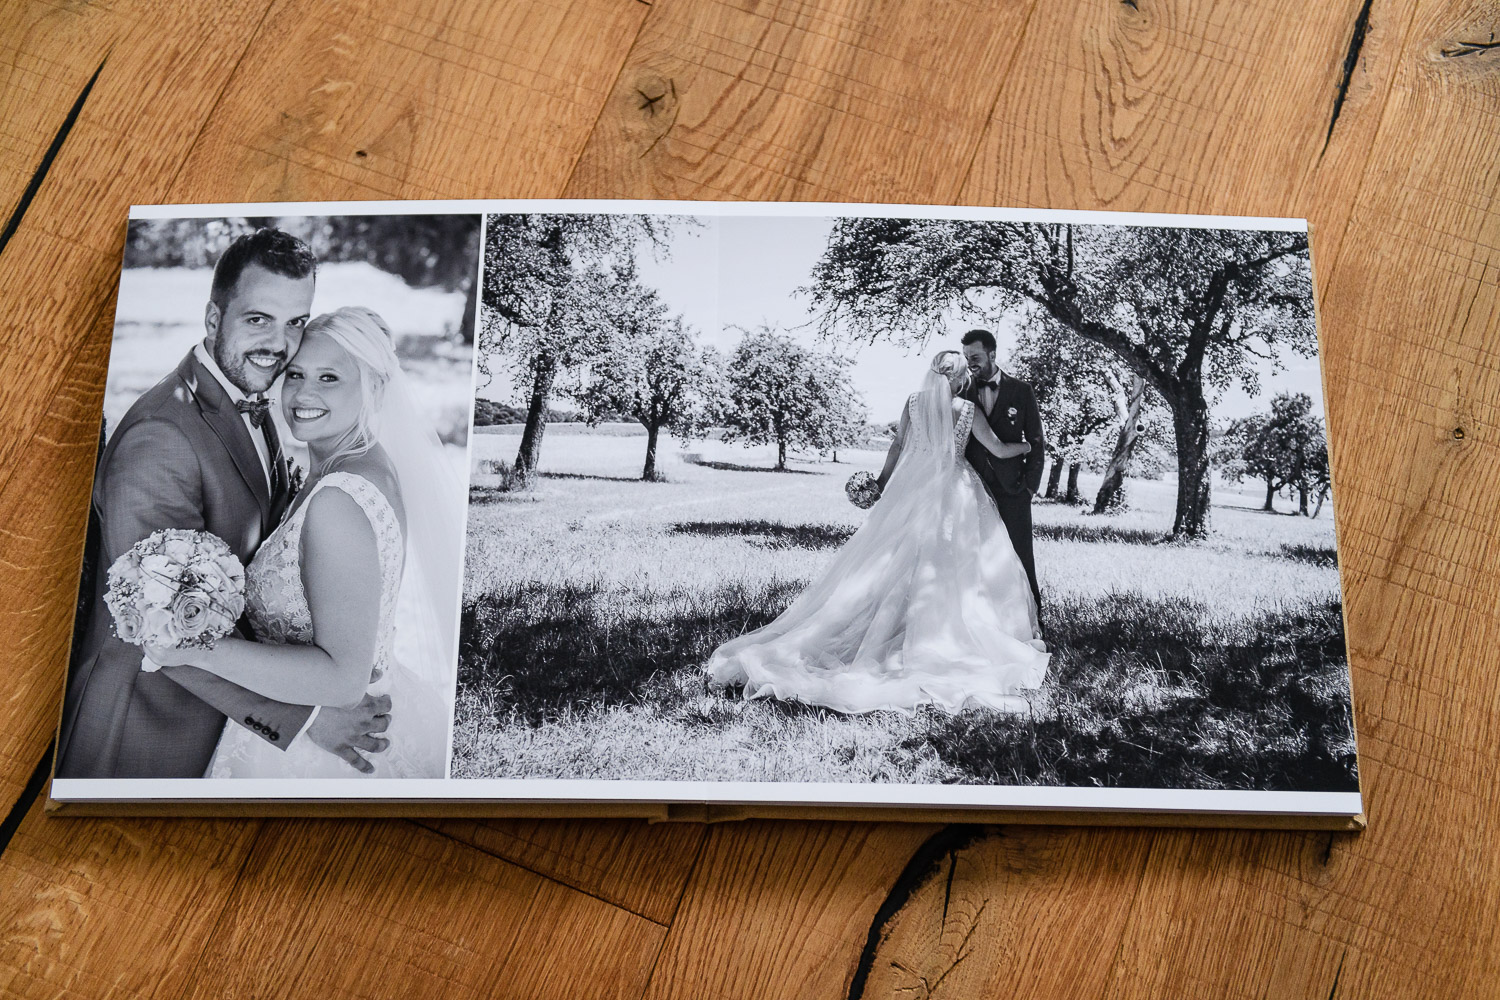 hochwertigem-Hochzeitsfotoalbum-aufgegeschlagen-auf-Holzboden-liegend